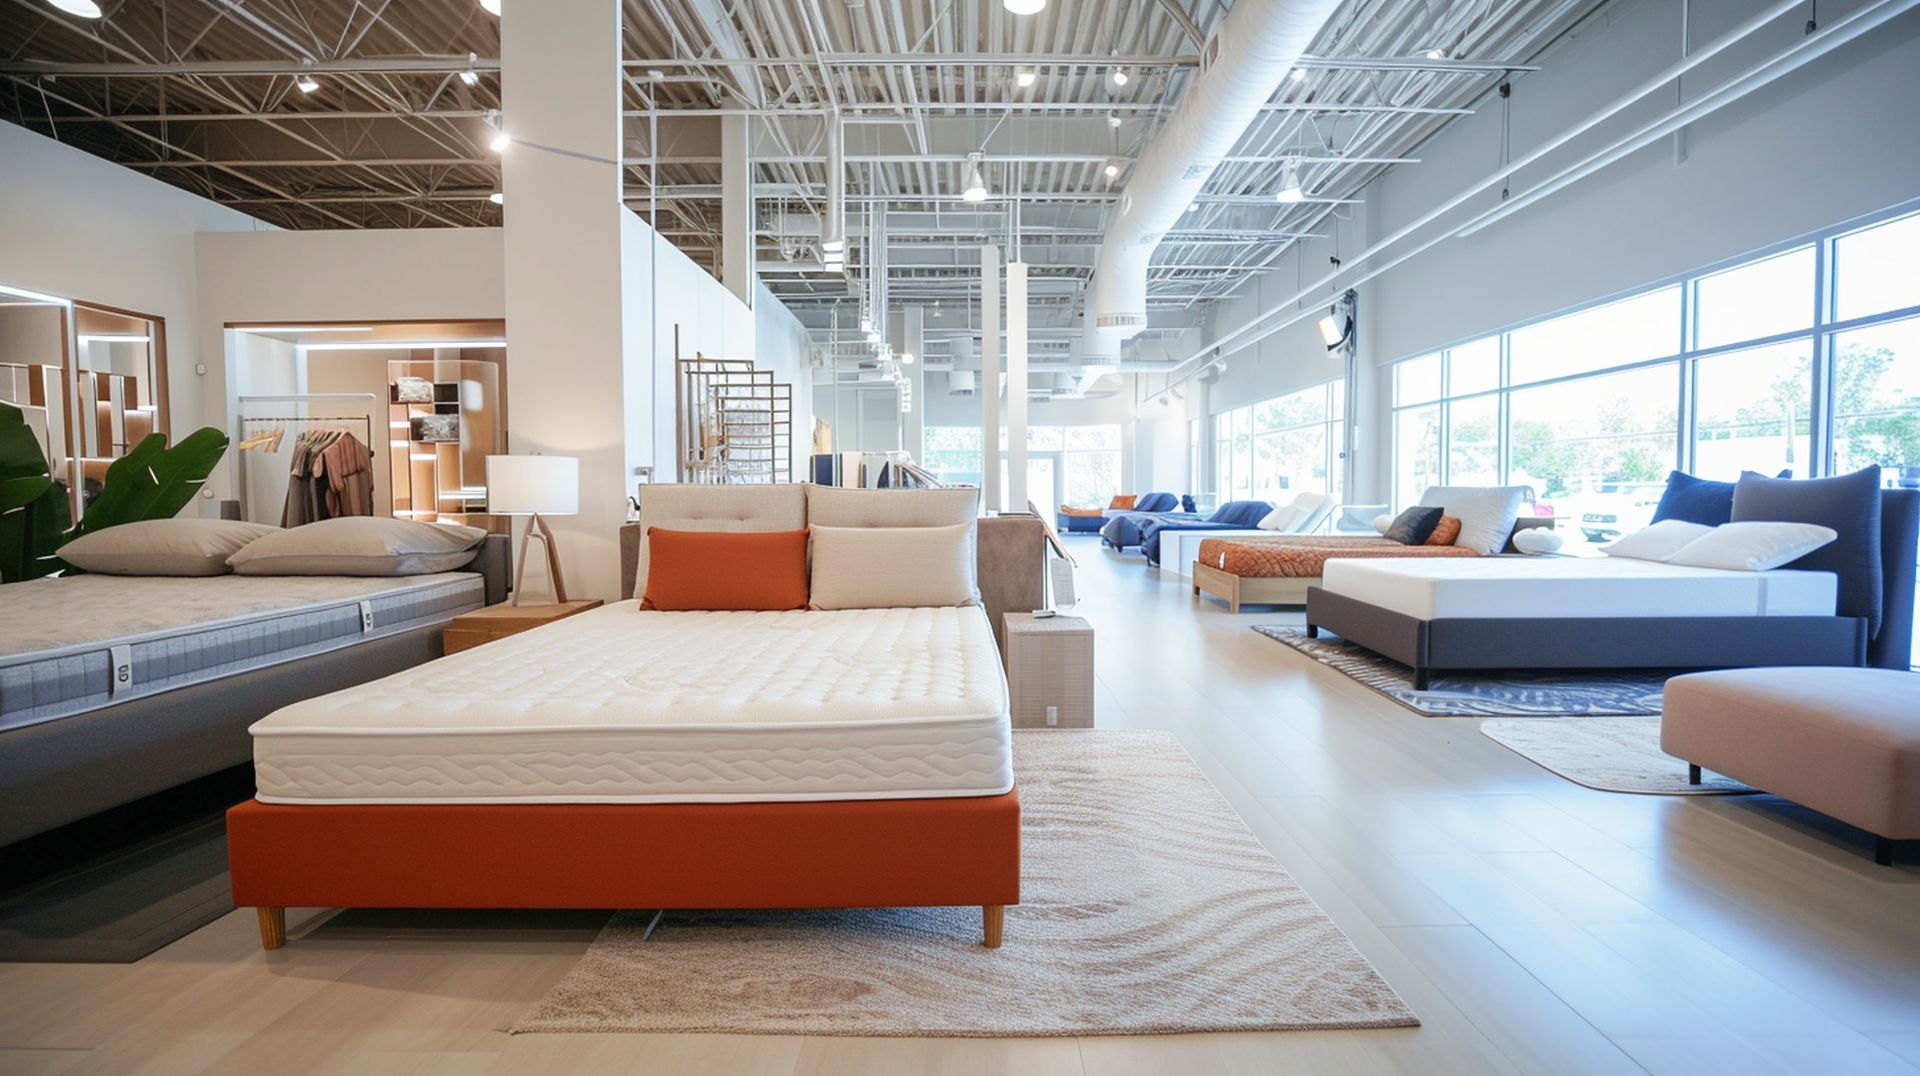 mattress stores newmattressland 041